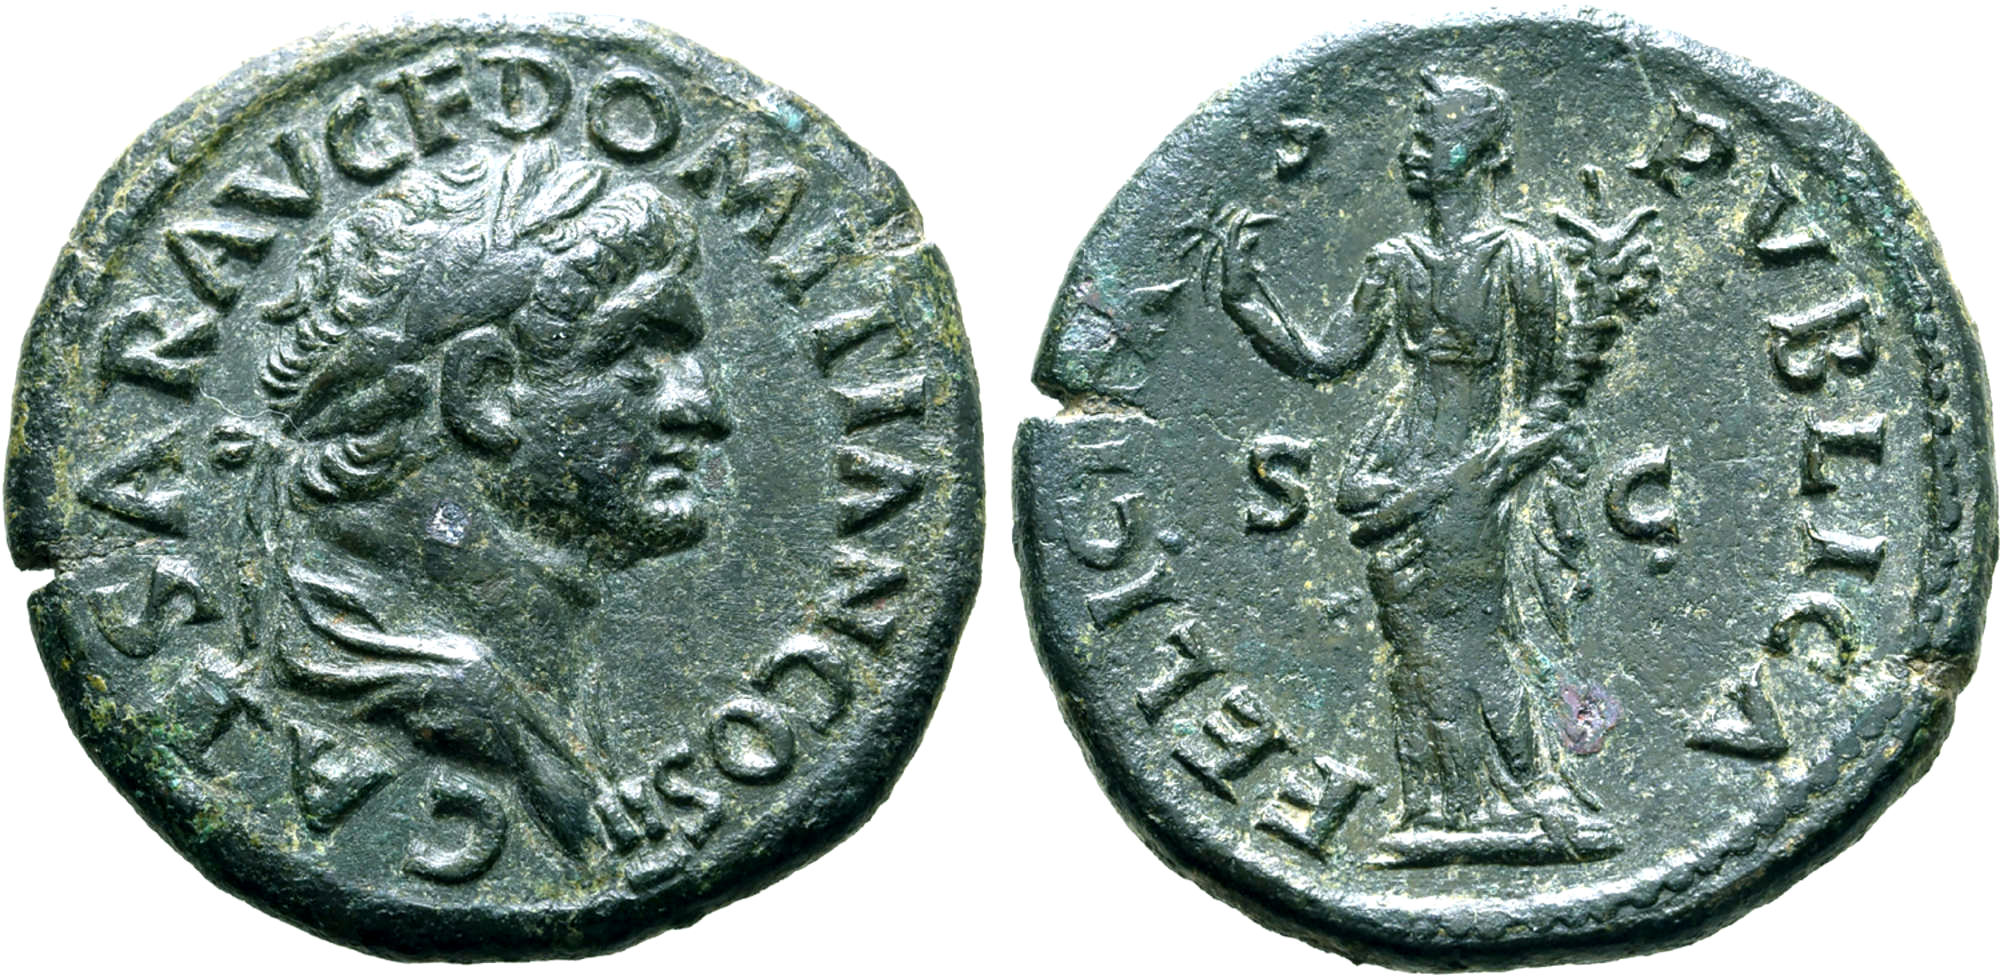 Domitianus 81-96 e.Kr, Dupondius (som Caesar 73-74 e.Kr) - Sällsynt och tilltalande